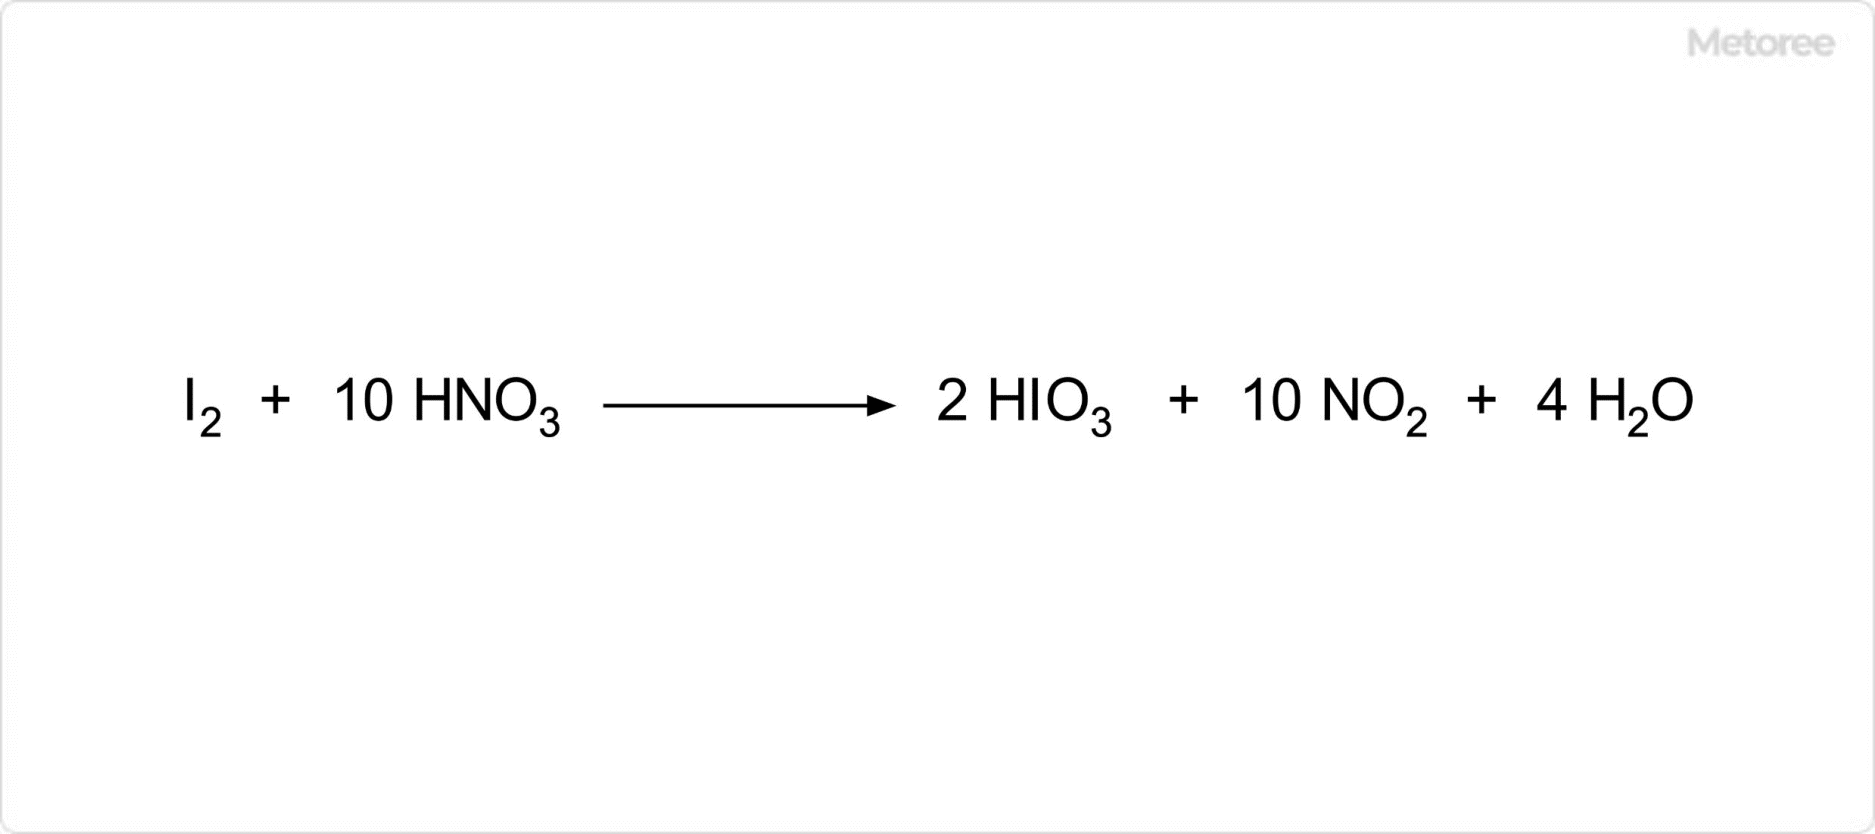 ヨウ素酸の合成